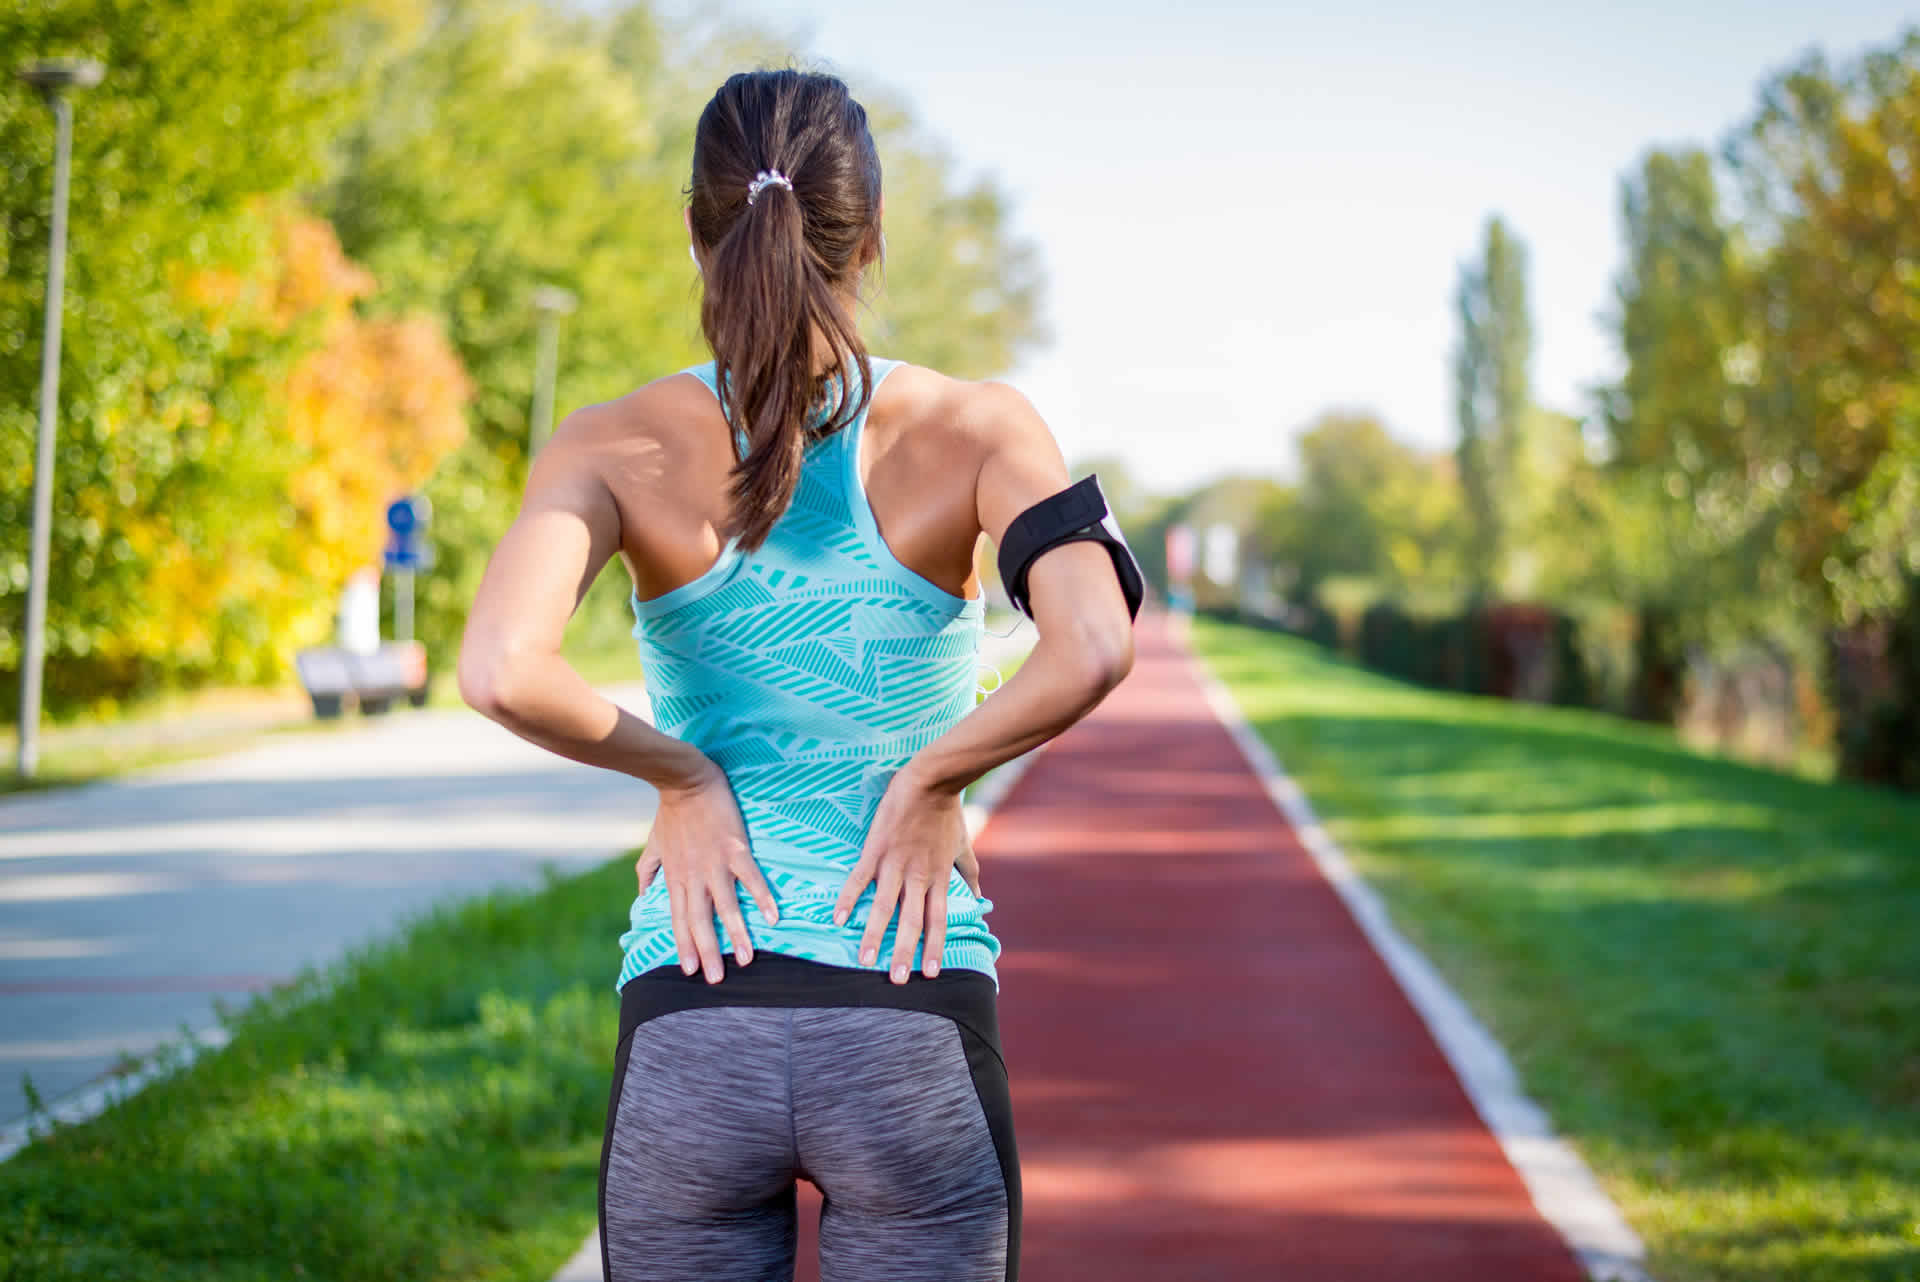 REHAteam - Physiotherapie, Trainingstherapie, Fitness - Brixen, Südtirol - Laufen ist schlecht für den Rücken: stimmt das?